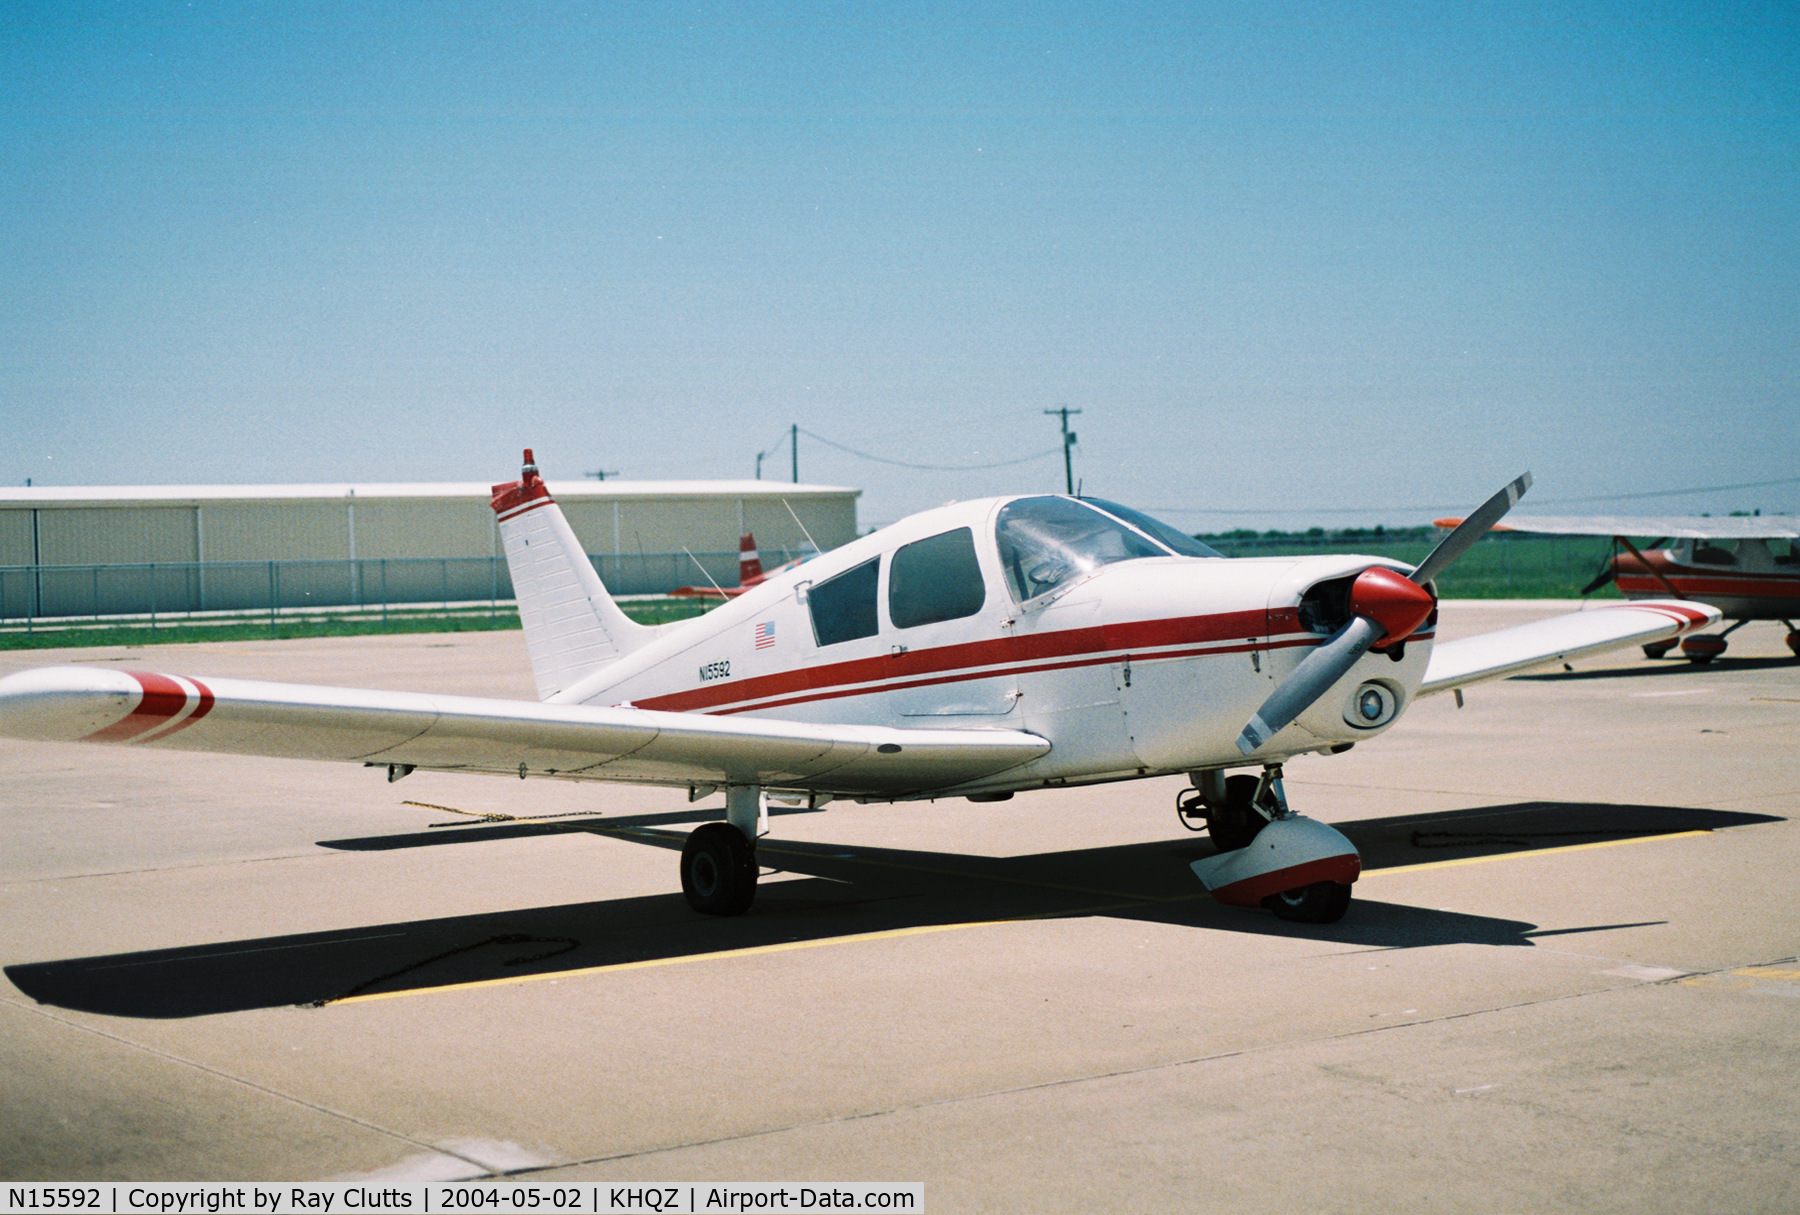 N15592, 1973 Piper PA-28-140 C/N 28-7325109, N15592 on airport apron